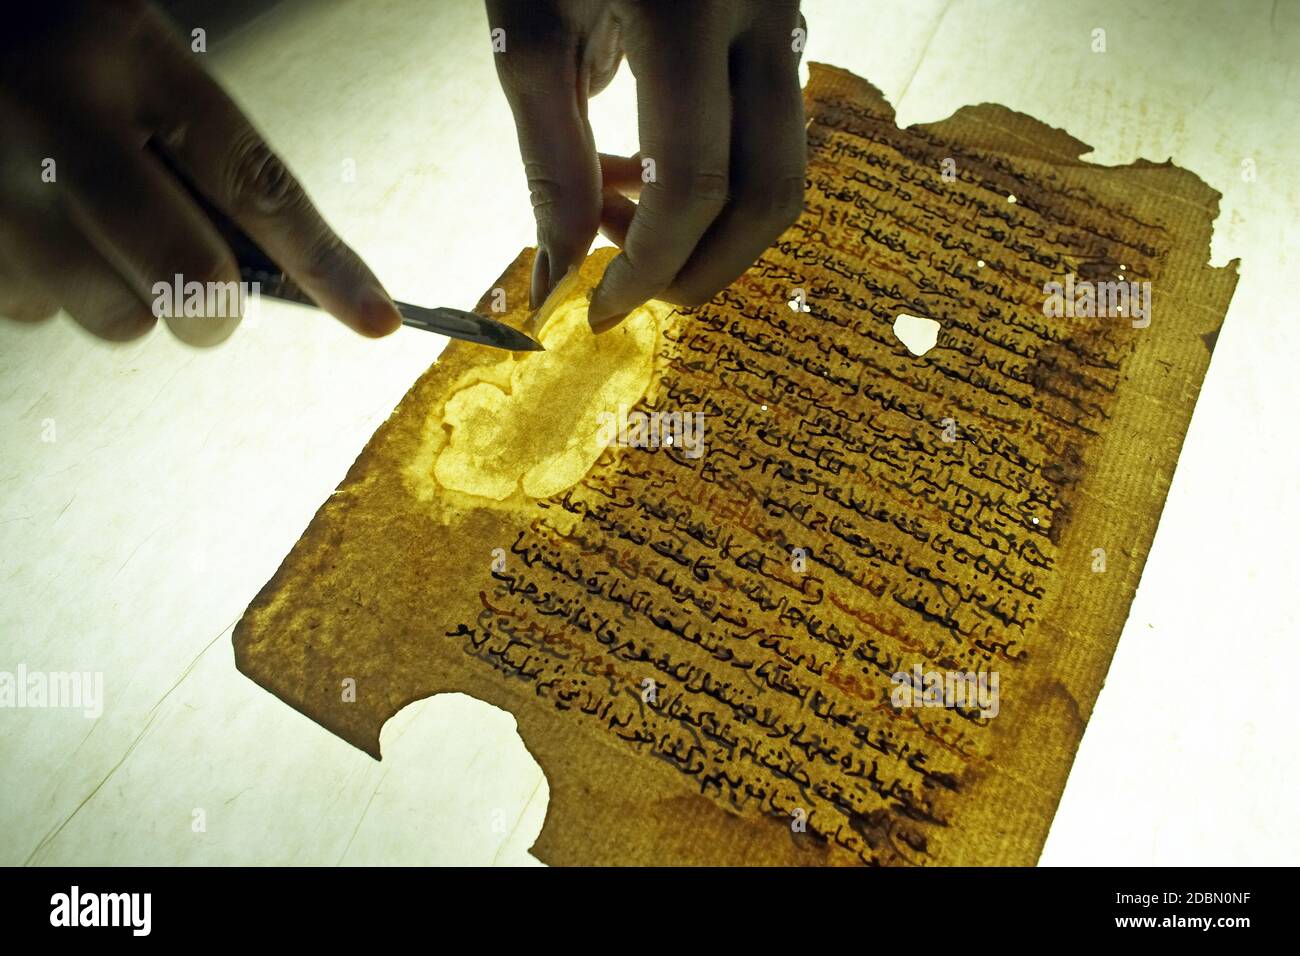 La restauration des manuscrits dans la bibliothèque privée 'maa Haidara' à Tombouctou, Mali, Afrique Banque D'Images